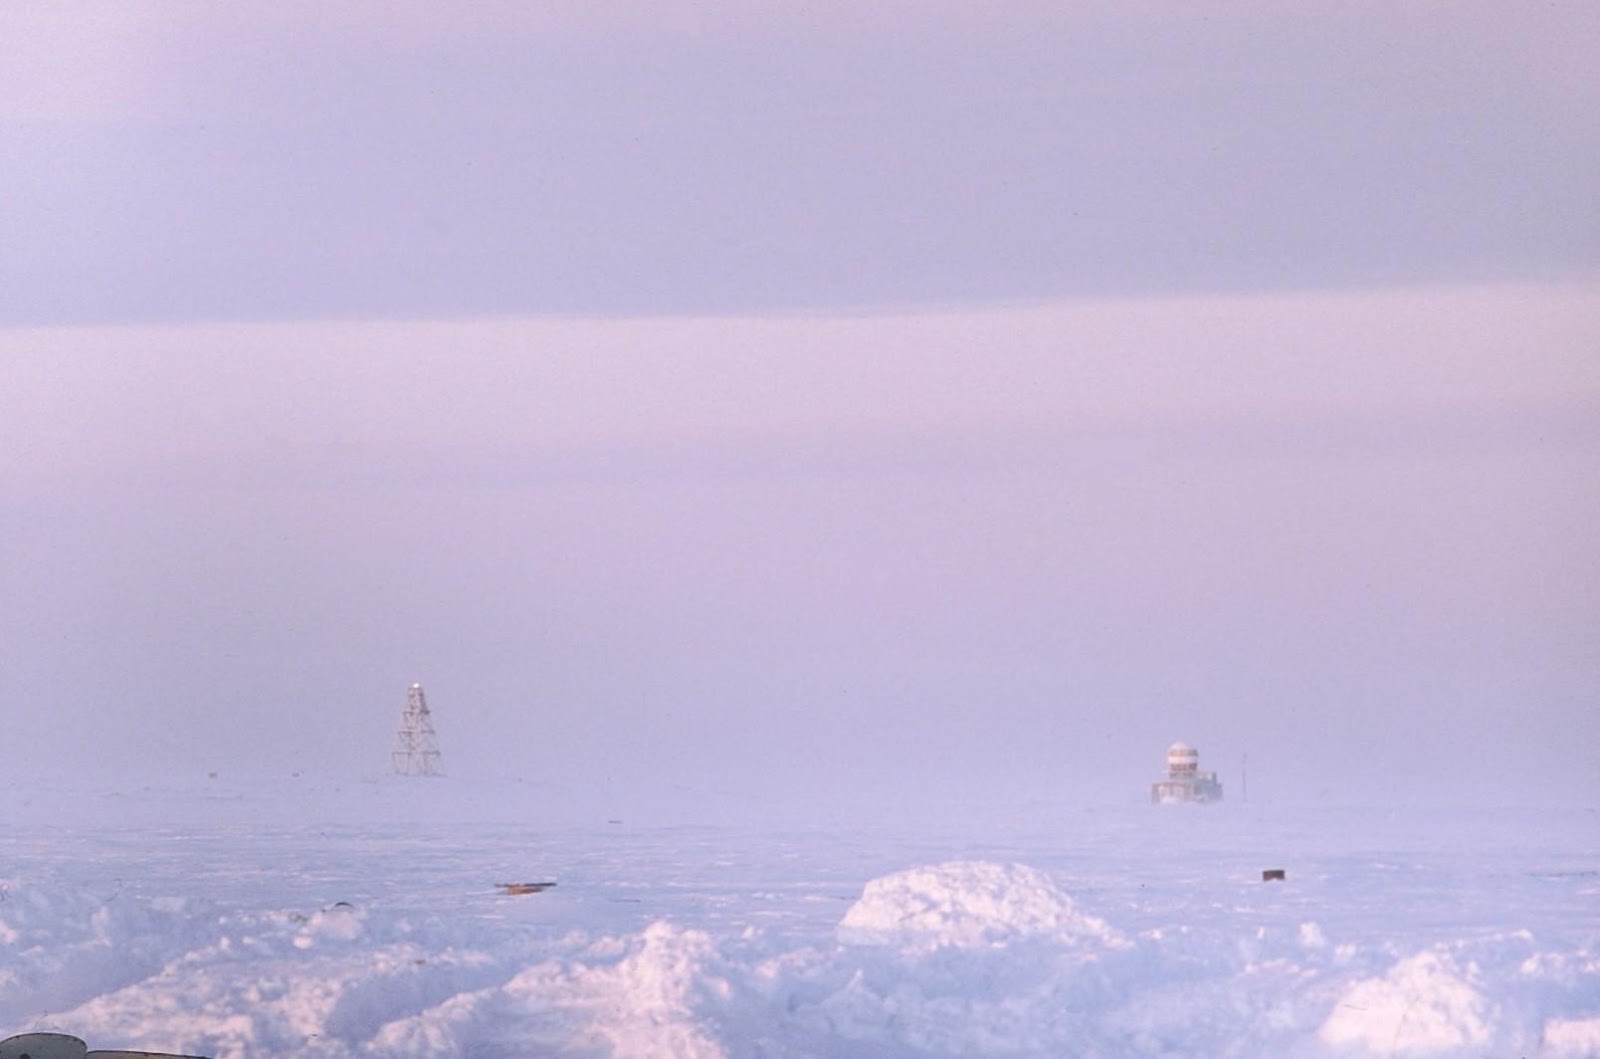 Море челюскина. Таймыр мыс Челюскин. Полуостров Таймыр мыс Челюскин. Маяк мыса Челюскин. Большой Арктический заповедник мыс Челюскин.